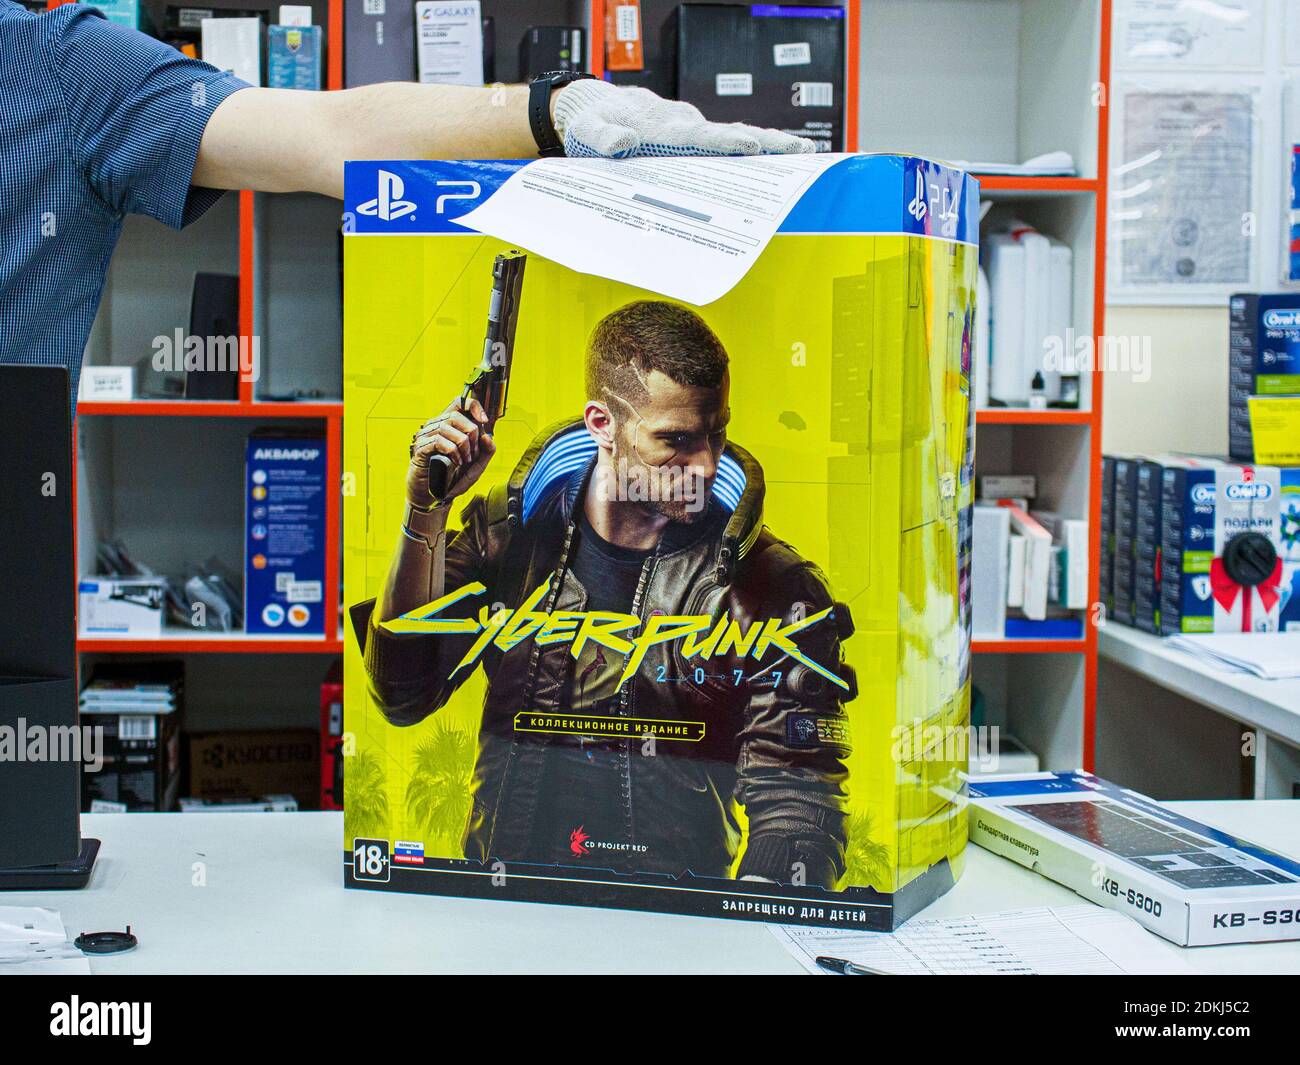 Eine Box mit der Sony PlayStation 4 Cyberpunk 2077 Collector's Edition auf  der Theke. Die erste Woche des Verkaufs ergab Probleme mit dem Spiel für  Besitzer von älteren Konsolen Stockfotografie - Alamy